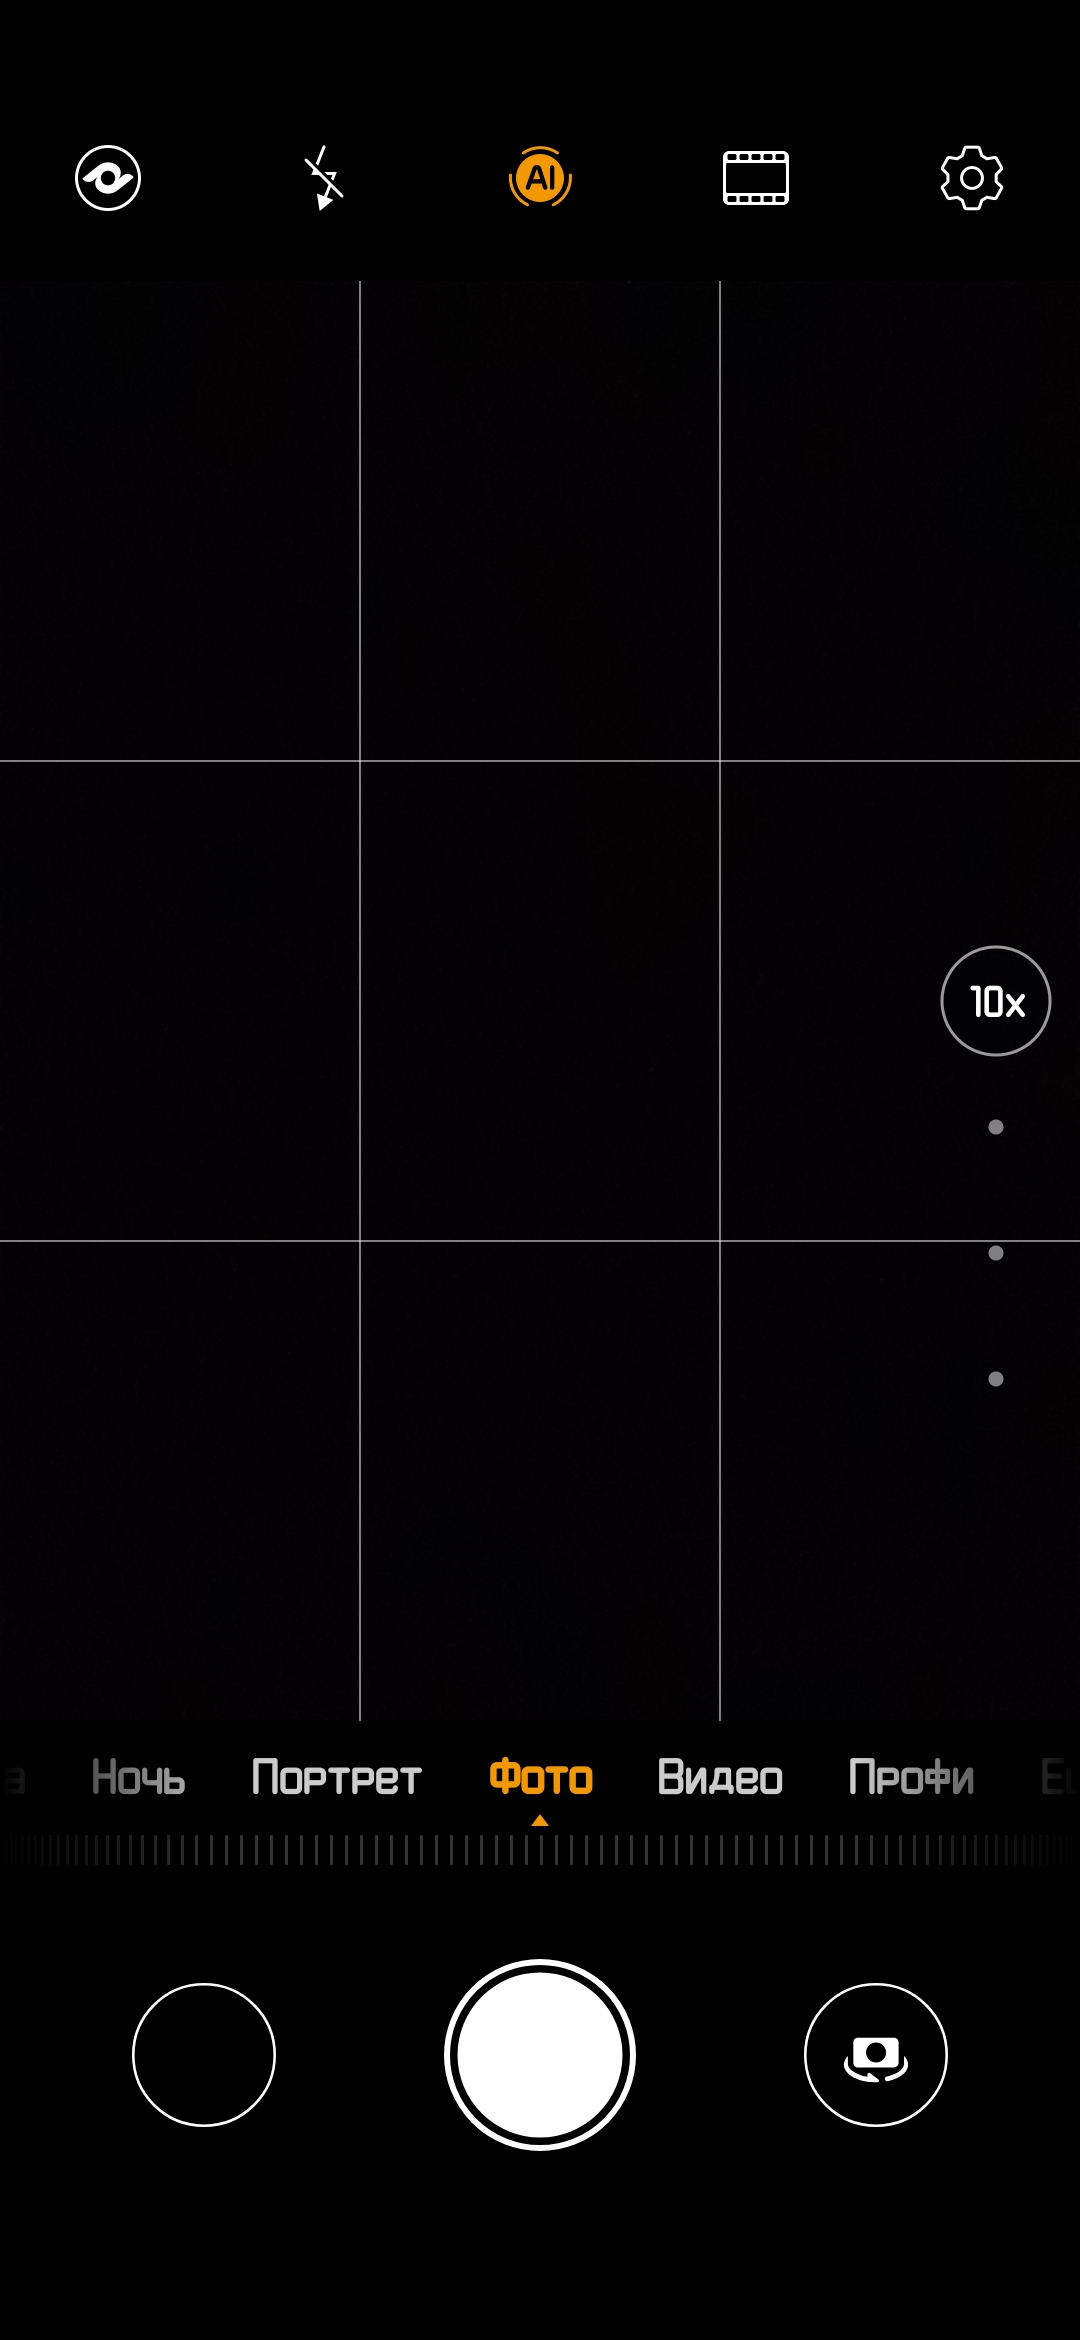 Обзор Huawei P30 Pro: прибор ночного видения-322